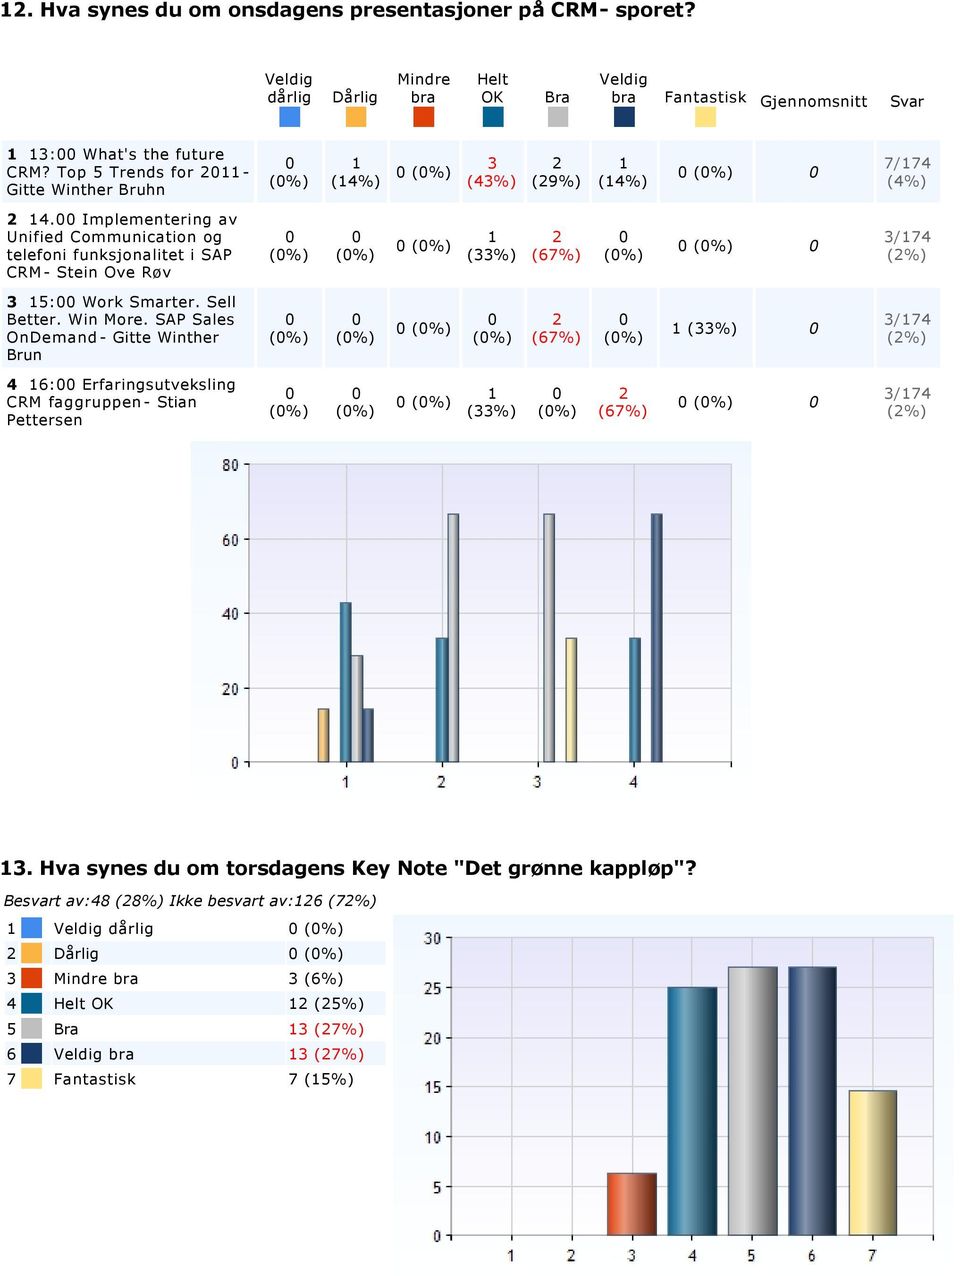 SAP Sales OnDemand Gitte Winther Brun (%) (%) (%) (%) (%) (%) / (%) : Erfaringsutveksling CRM faggruppen Stian Pettersen (%) (%) (%) (%) (%) (%) / (%).